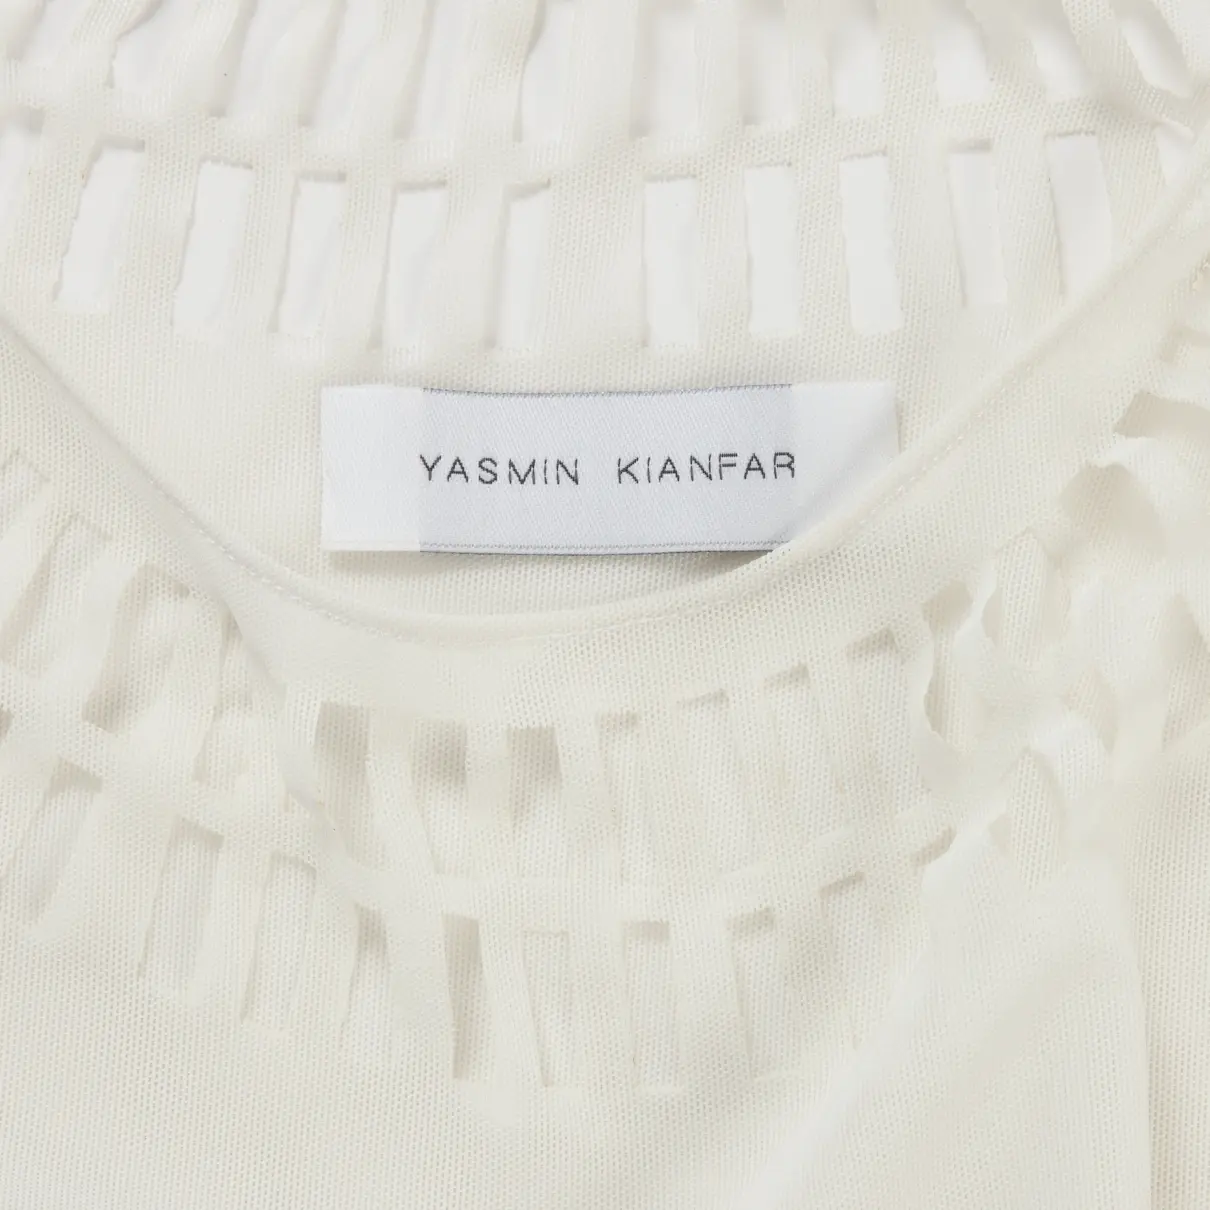 Buy Yasmin Kianfar Top online